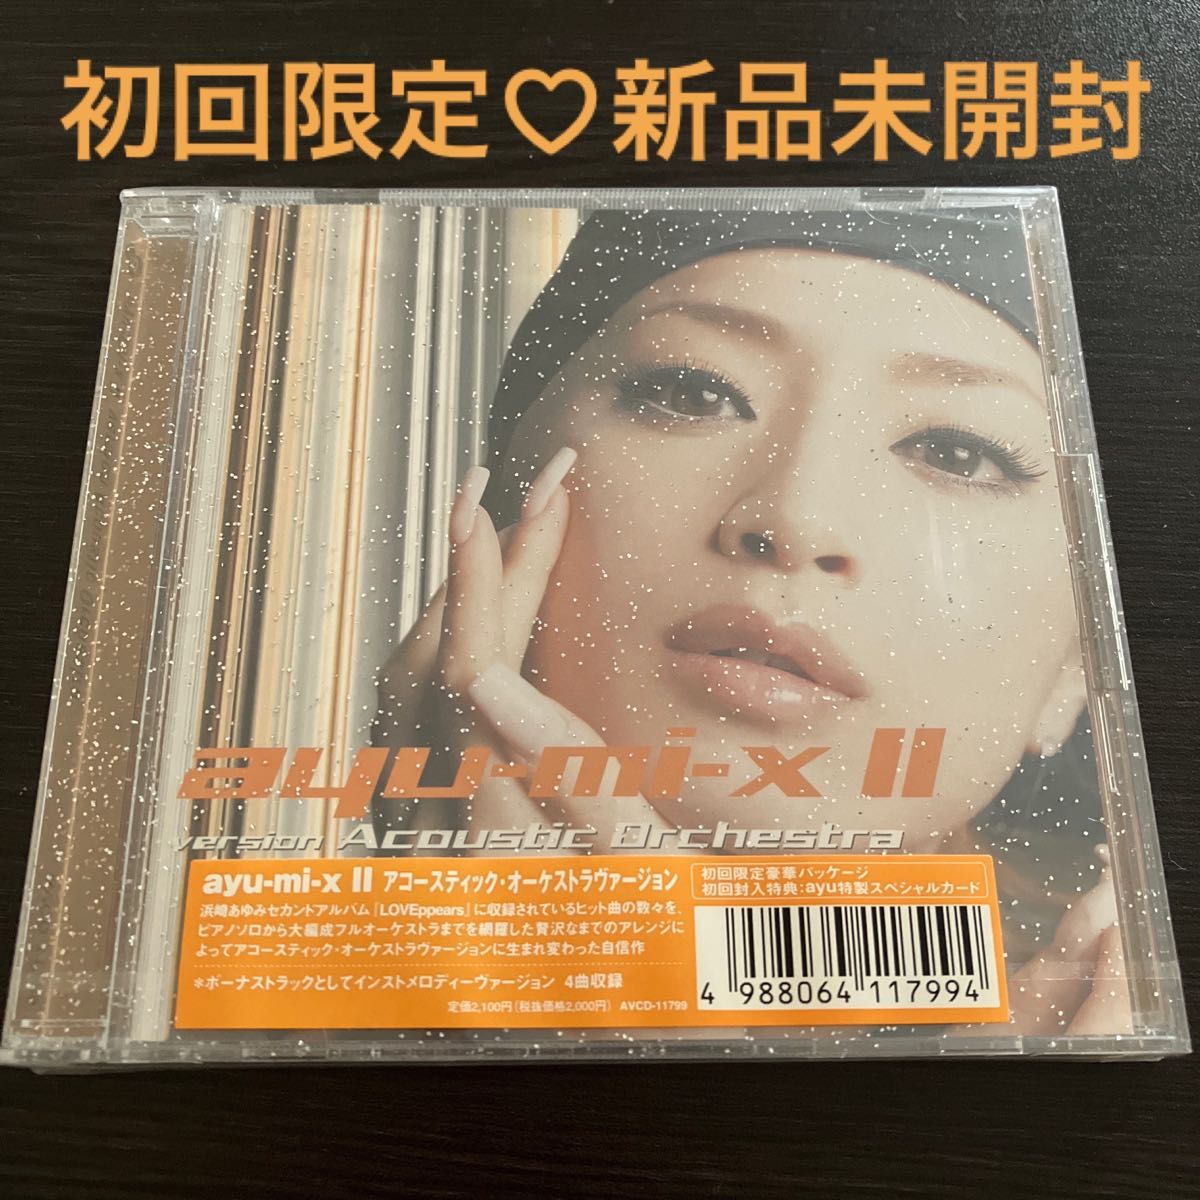 浜崎あゆみ/ayu-mi-x2 version Acoustic Orchestra CD 初回限定